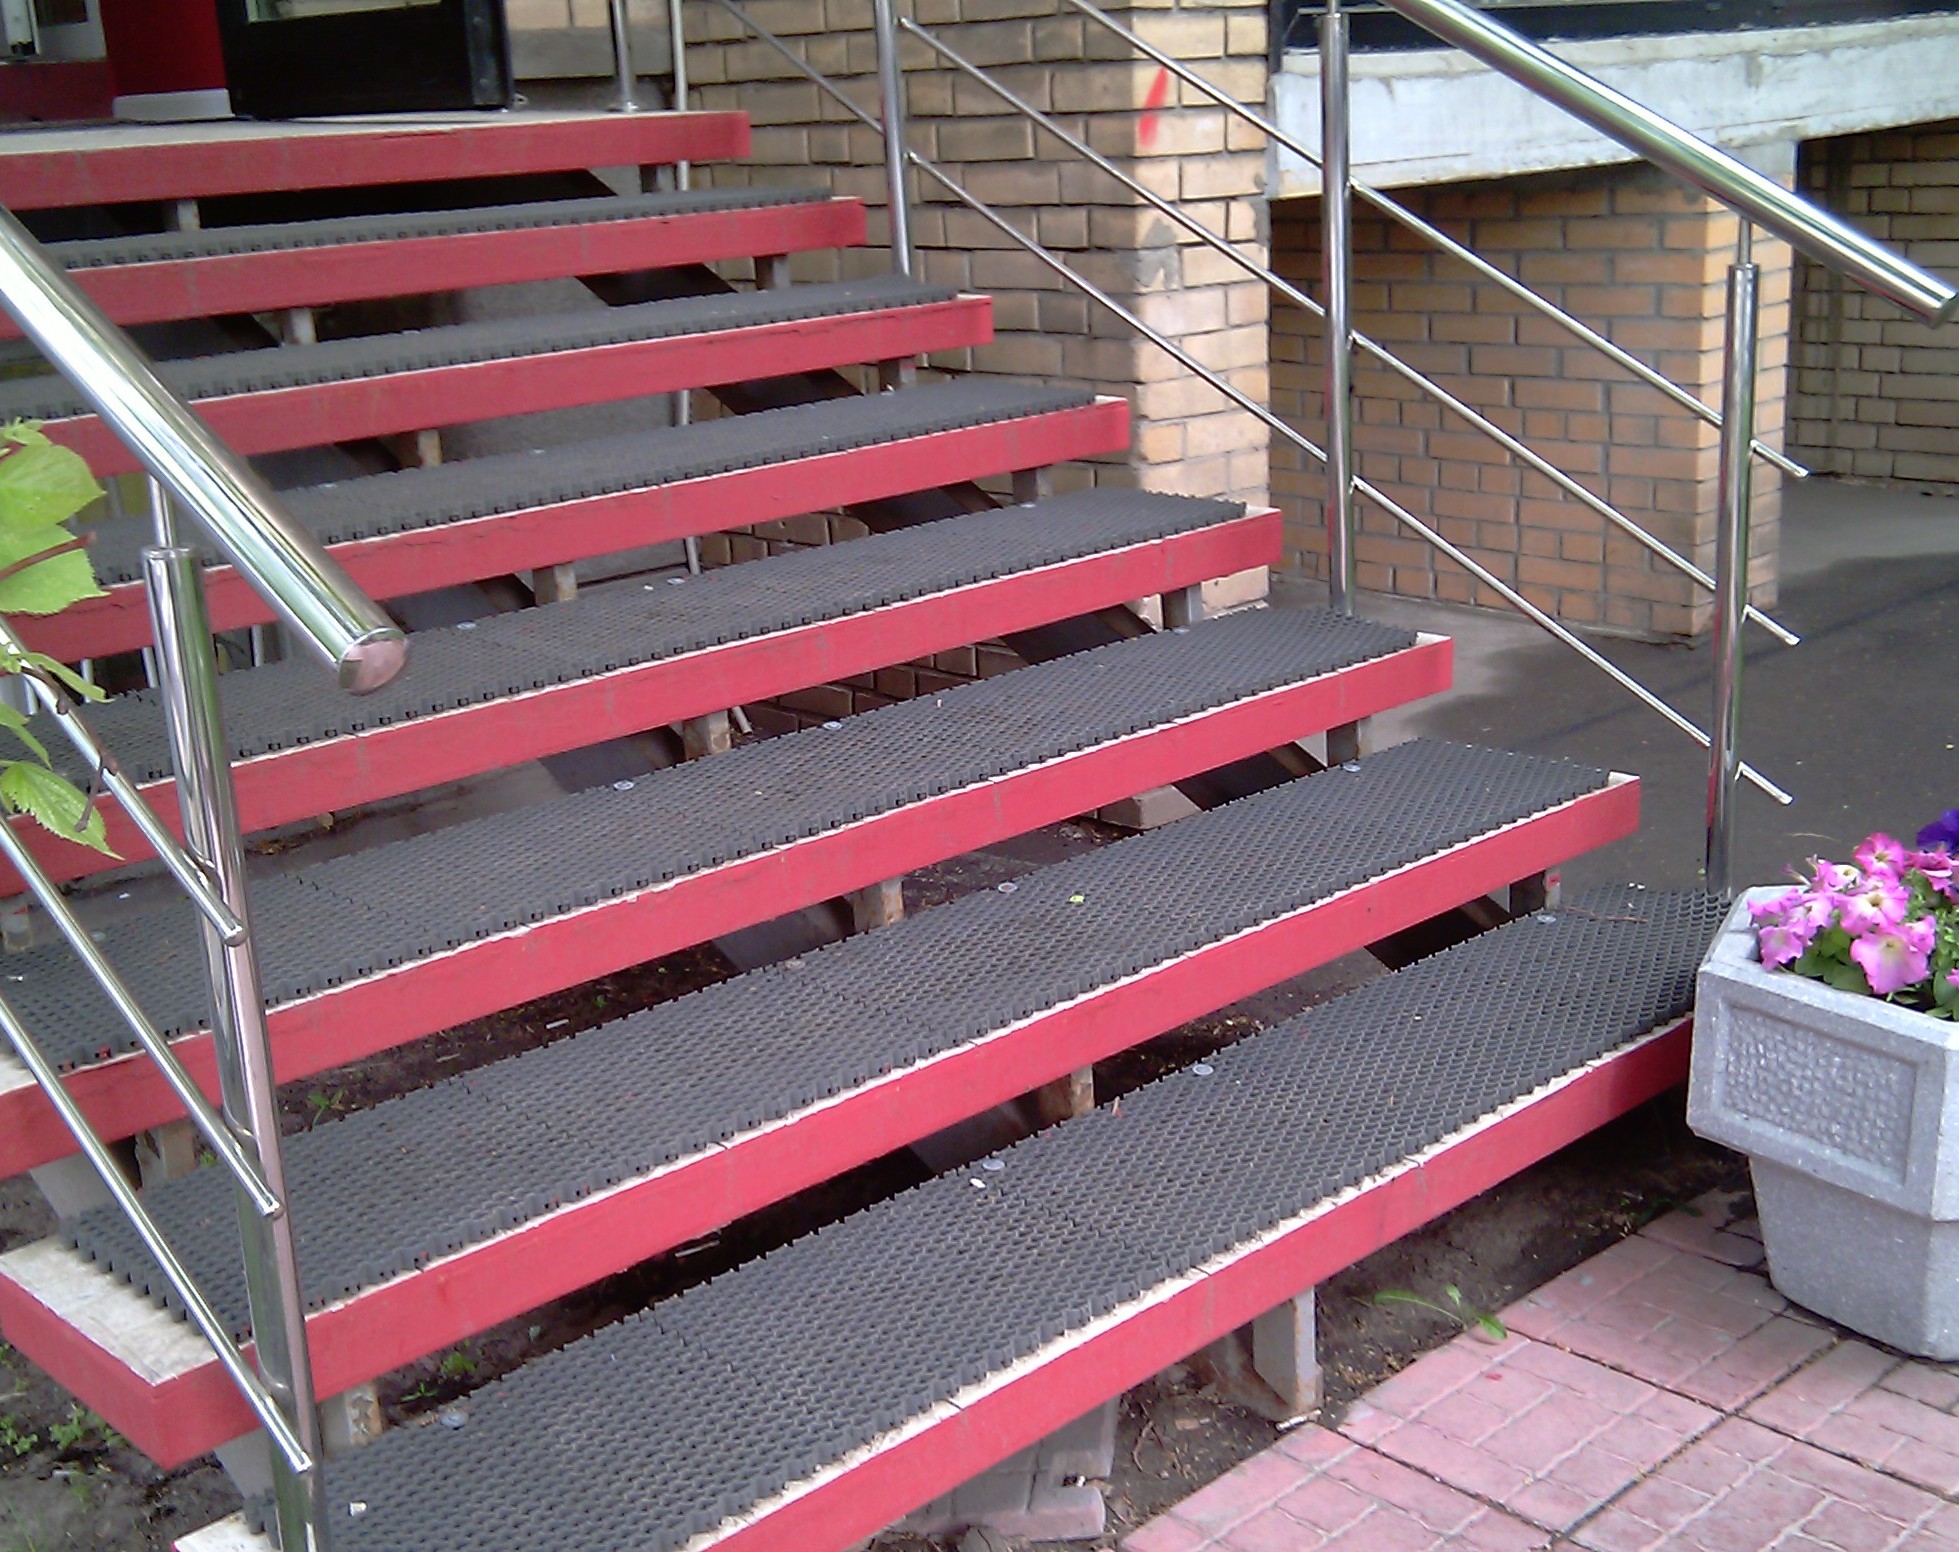 Поступи резиновые. Противоскользящие накладки на ступени деревянной лестницы на улице. Резиновые накладки на ступени противоскользящие. Резиновая плитка NEWMIX противоскользящая ступень. Накладки противоскольжения на ступени для лестницы.